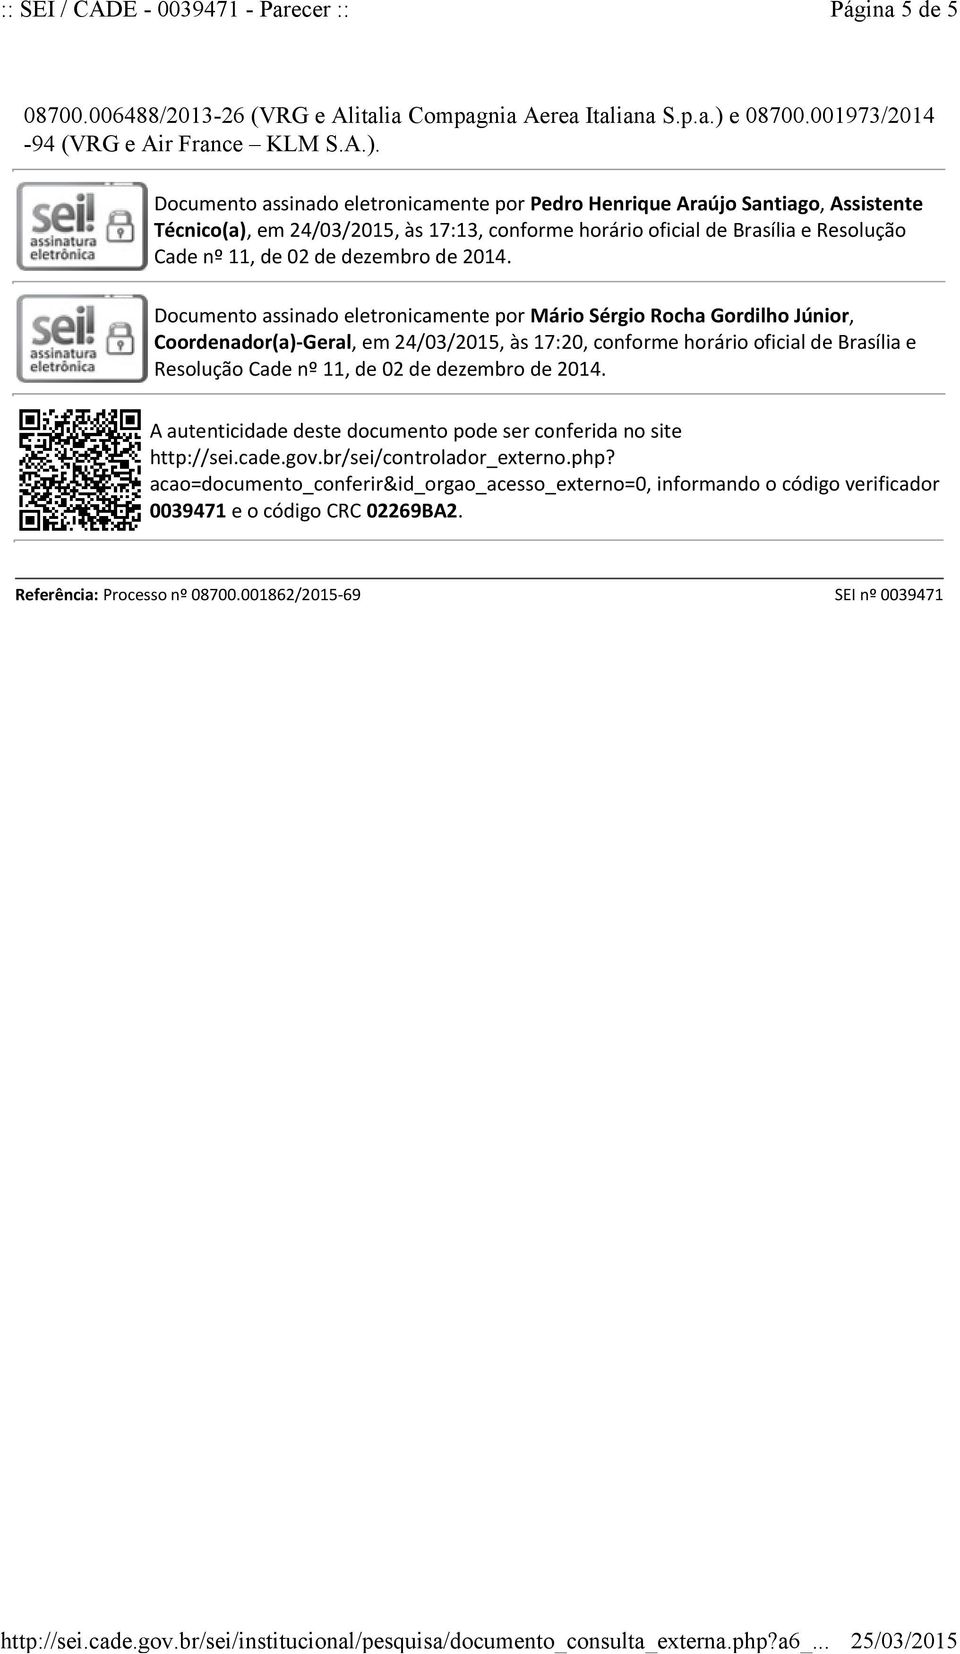 Documento assinado eletronicamente por Pedro Henrique Araújo Santiago, Assistente Técnico(a), em 24/03/2015, às 17:13, conforme horário oficial de Brasília e Resolução Cade nº 11, de 02 de dezembro